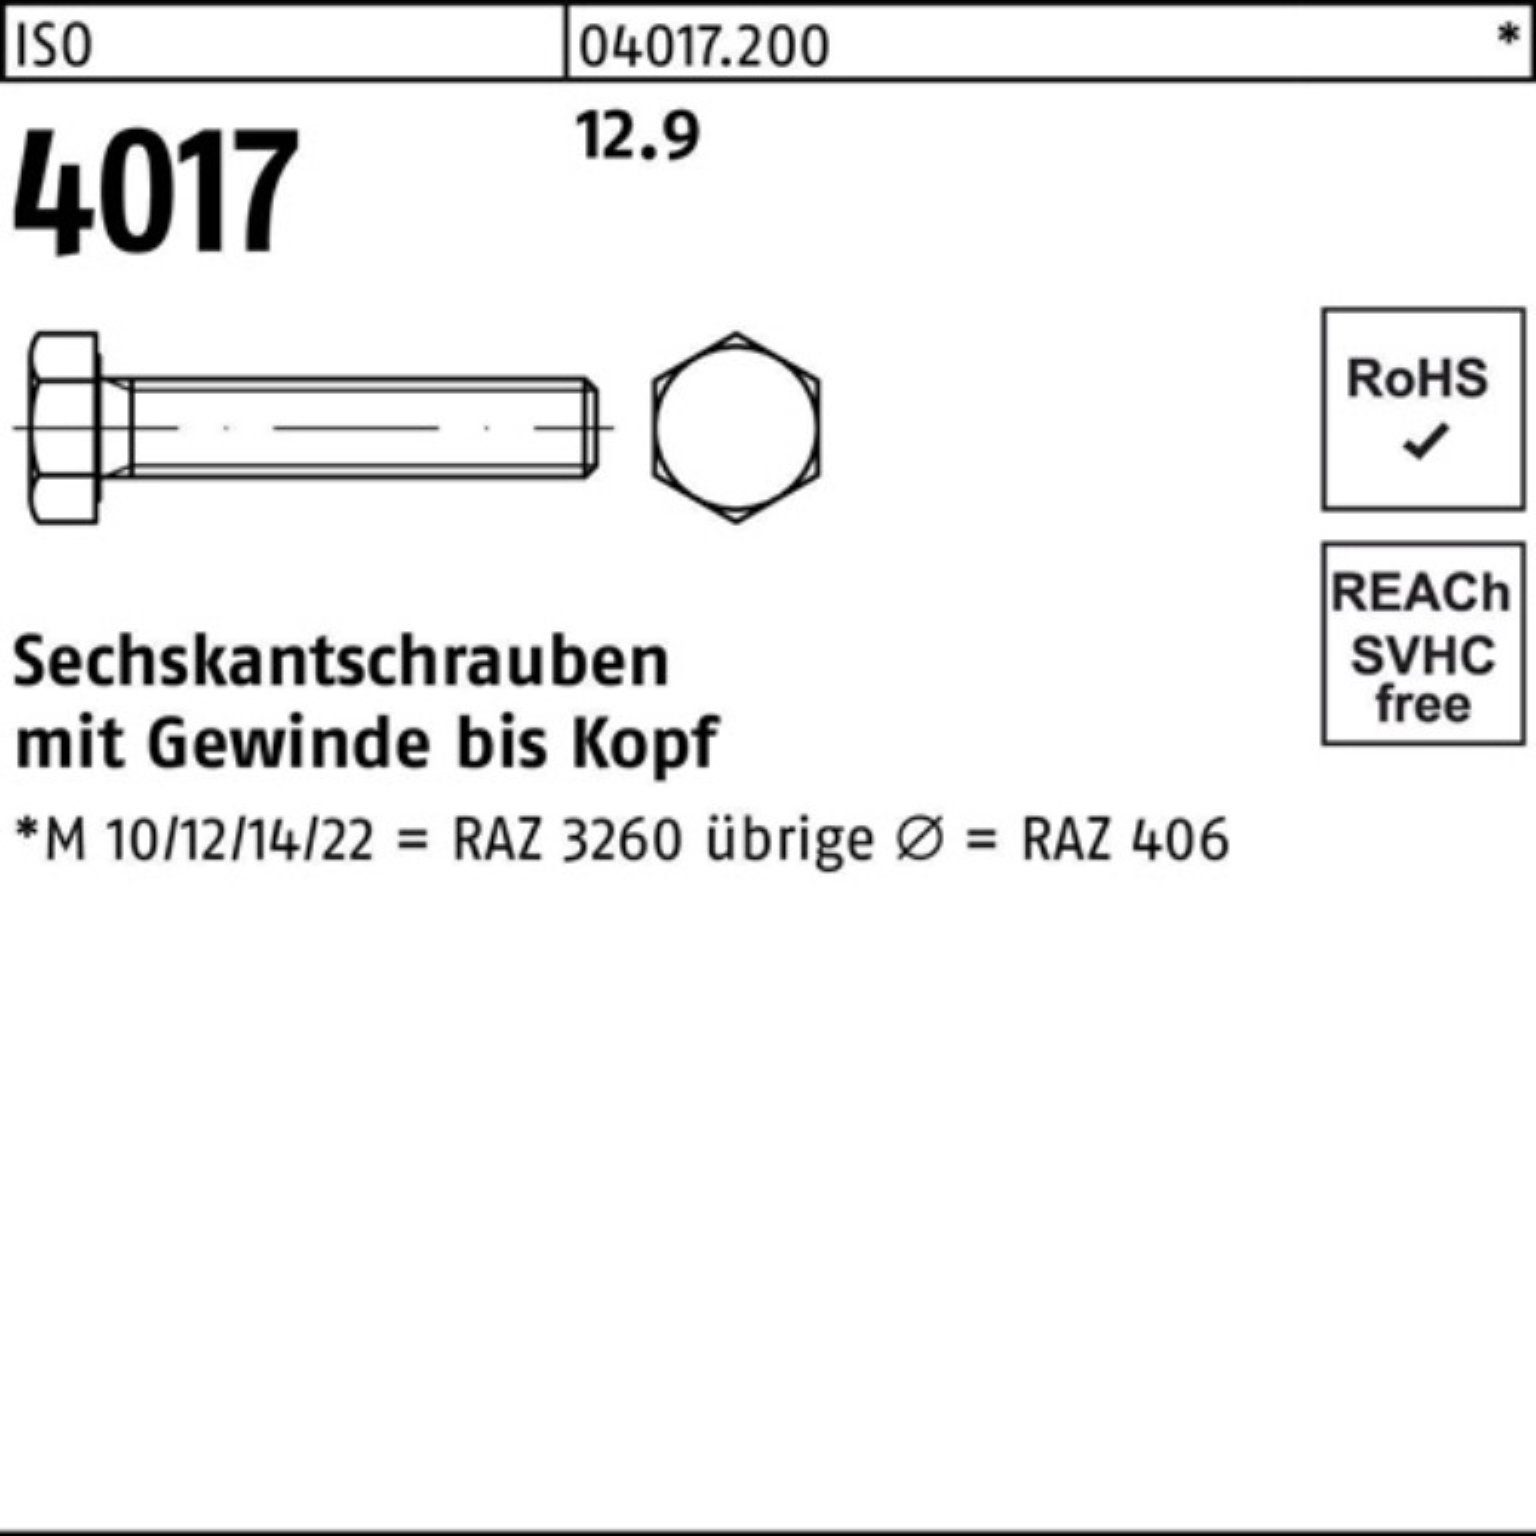 Bufab Sechskantschraube 25 M20x Pack Stück 100er 4017 55 ISO VG Sechskantschraube ISO 40 12.9